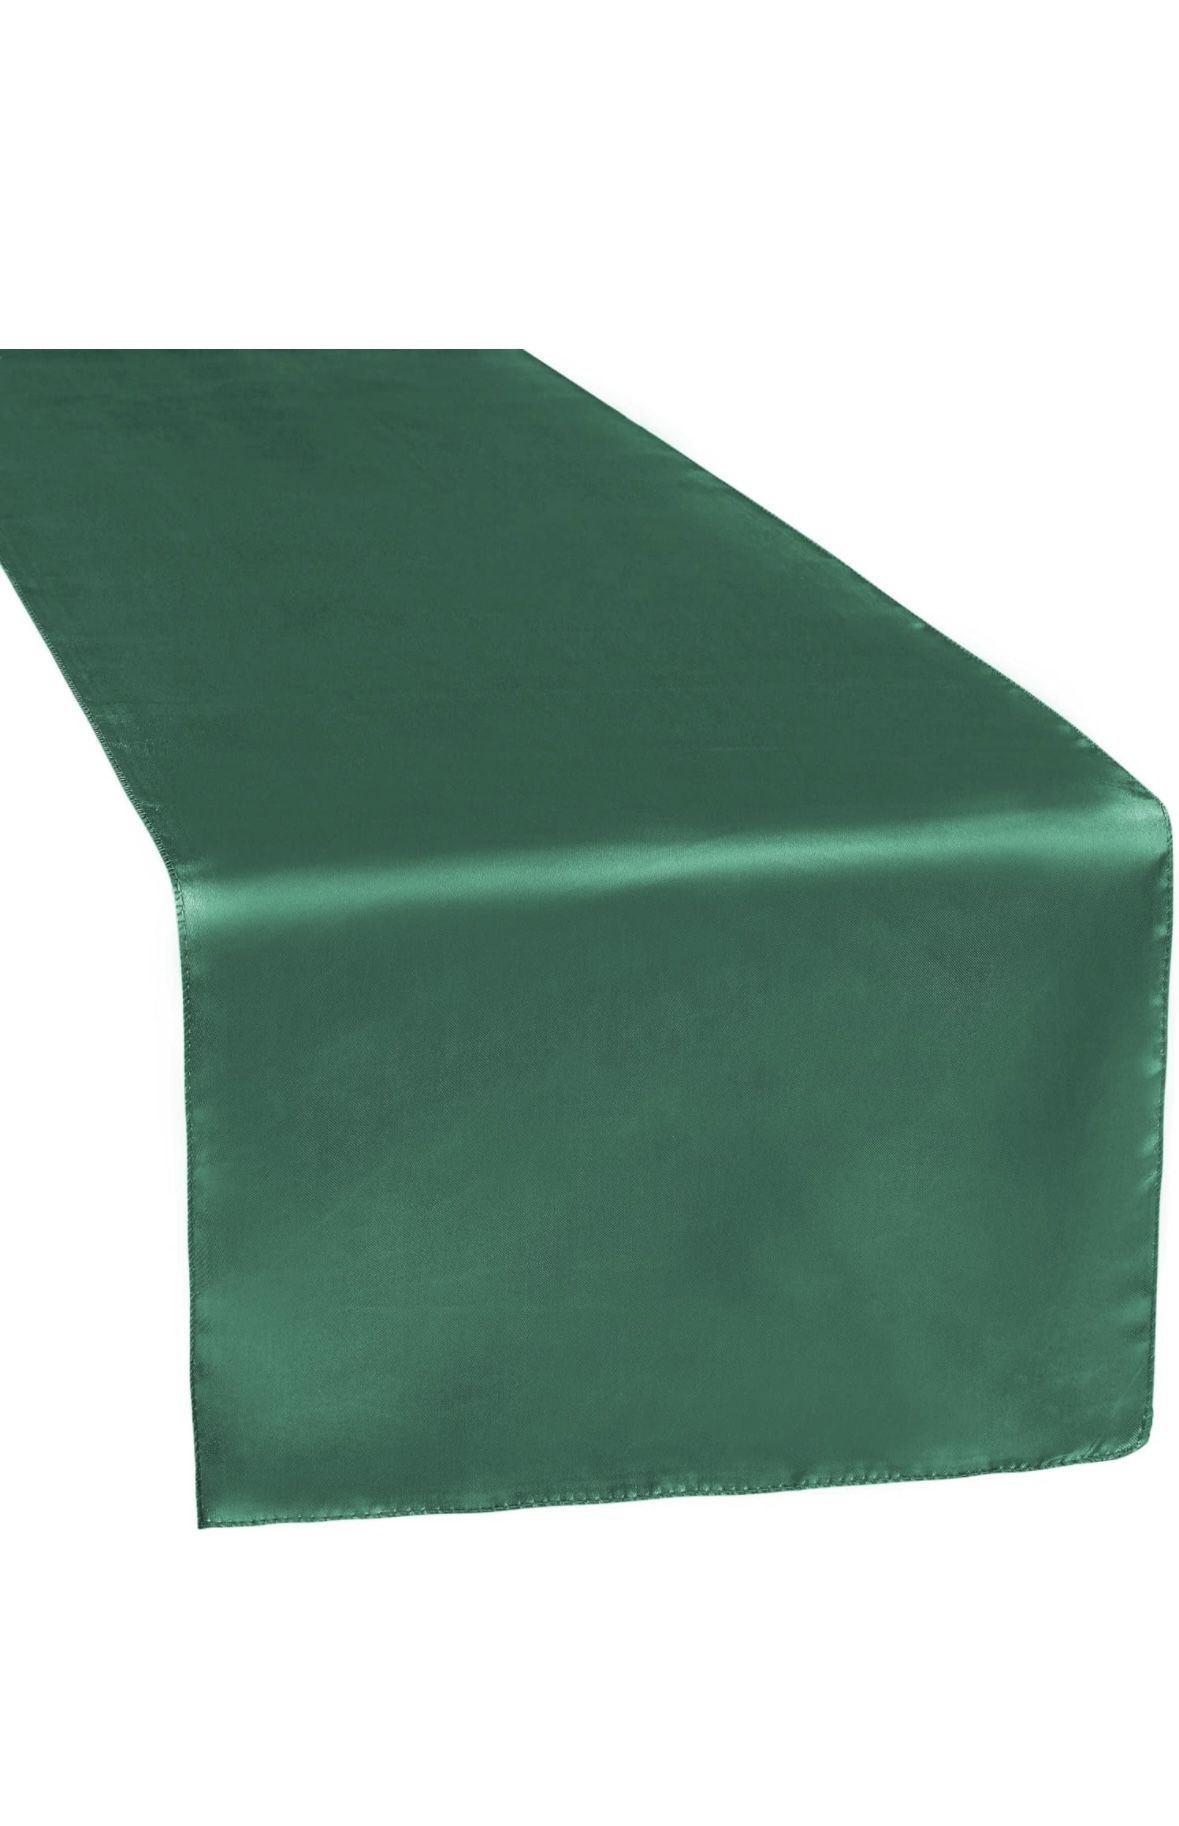 Satin Green Large Table Runner 